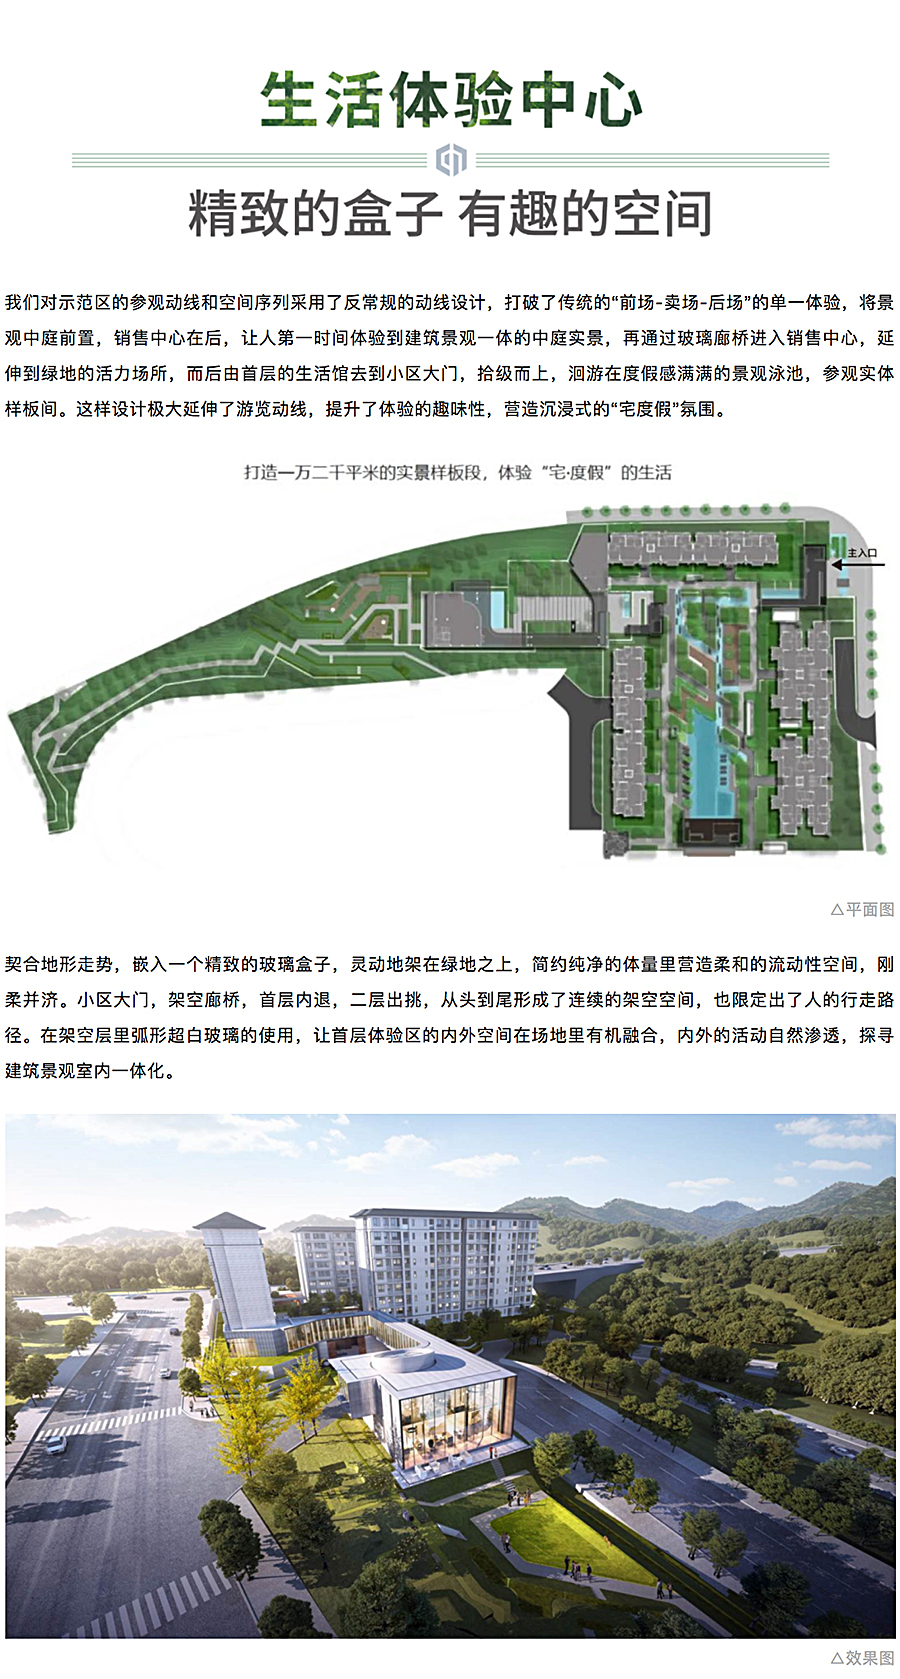 创新洋房社区-引领当代生活-_-重庆东原·月印万川_0002_图层-3.jpg